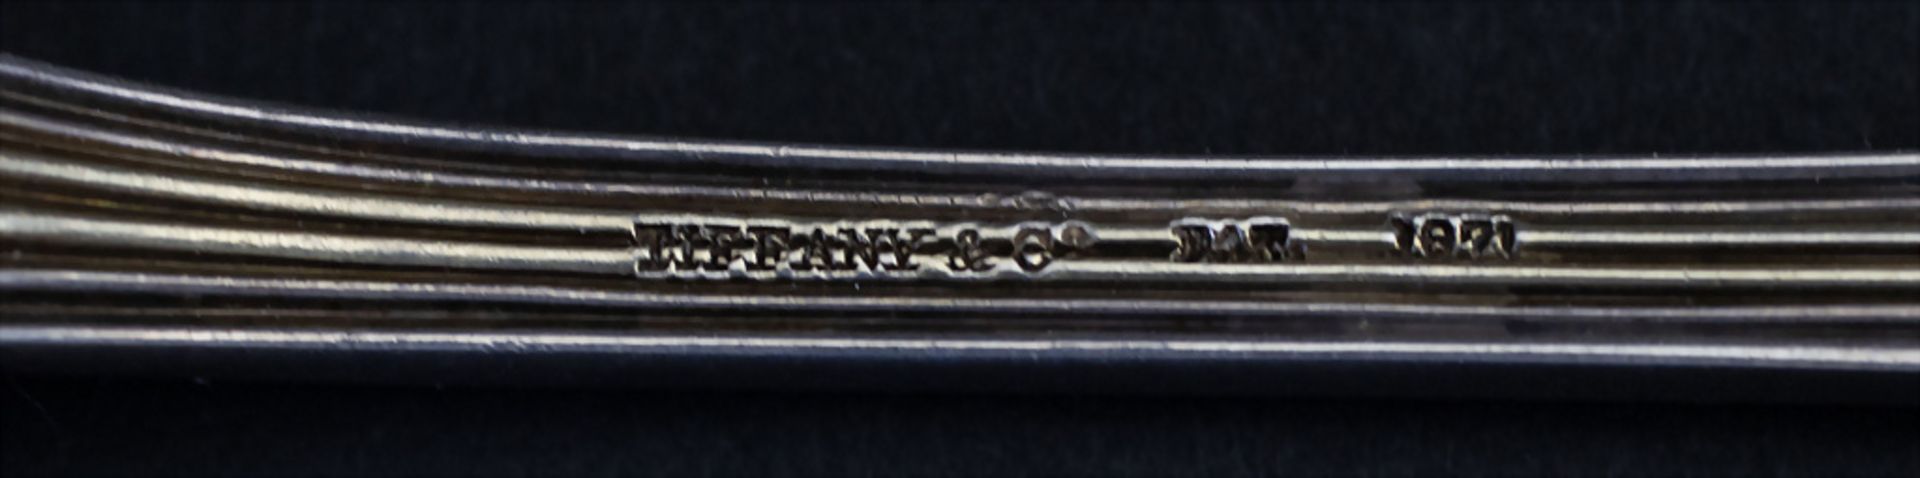 3 Teile Vorlegebesteck / 3 pieces of silver serving cutlery, Tiffany, um 1890 - Bild 10 aus 10